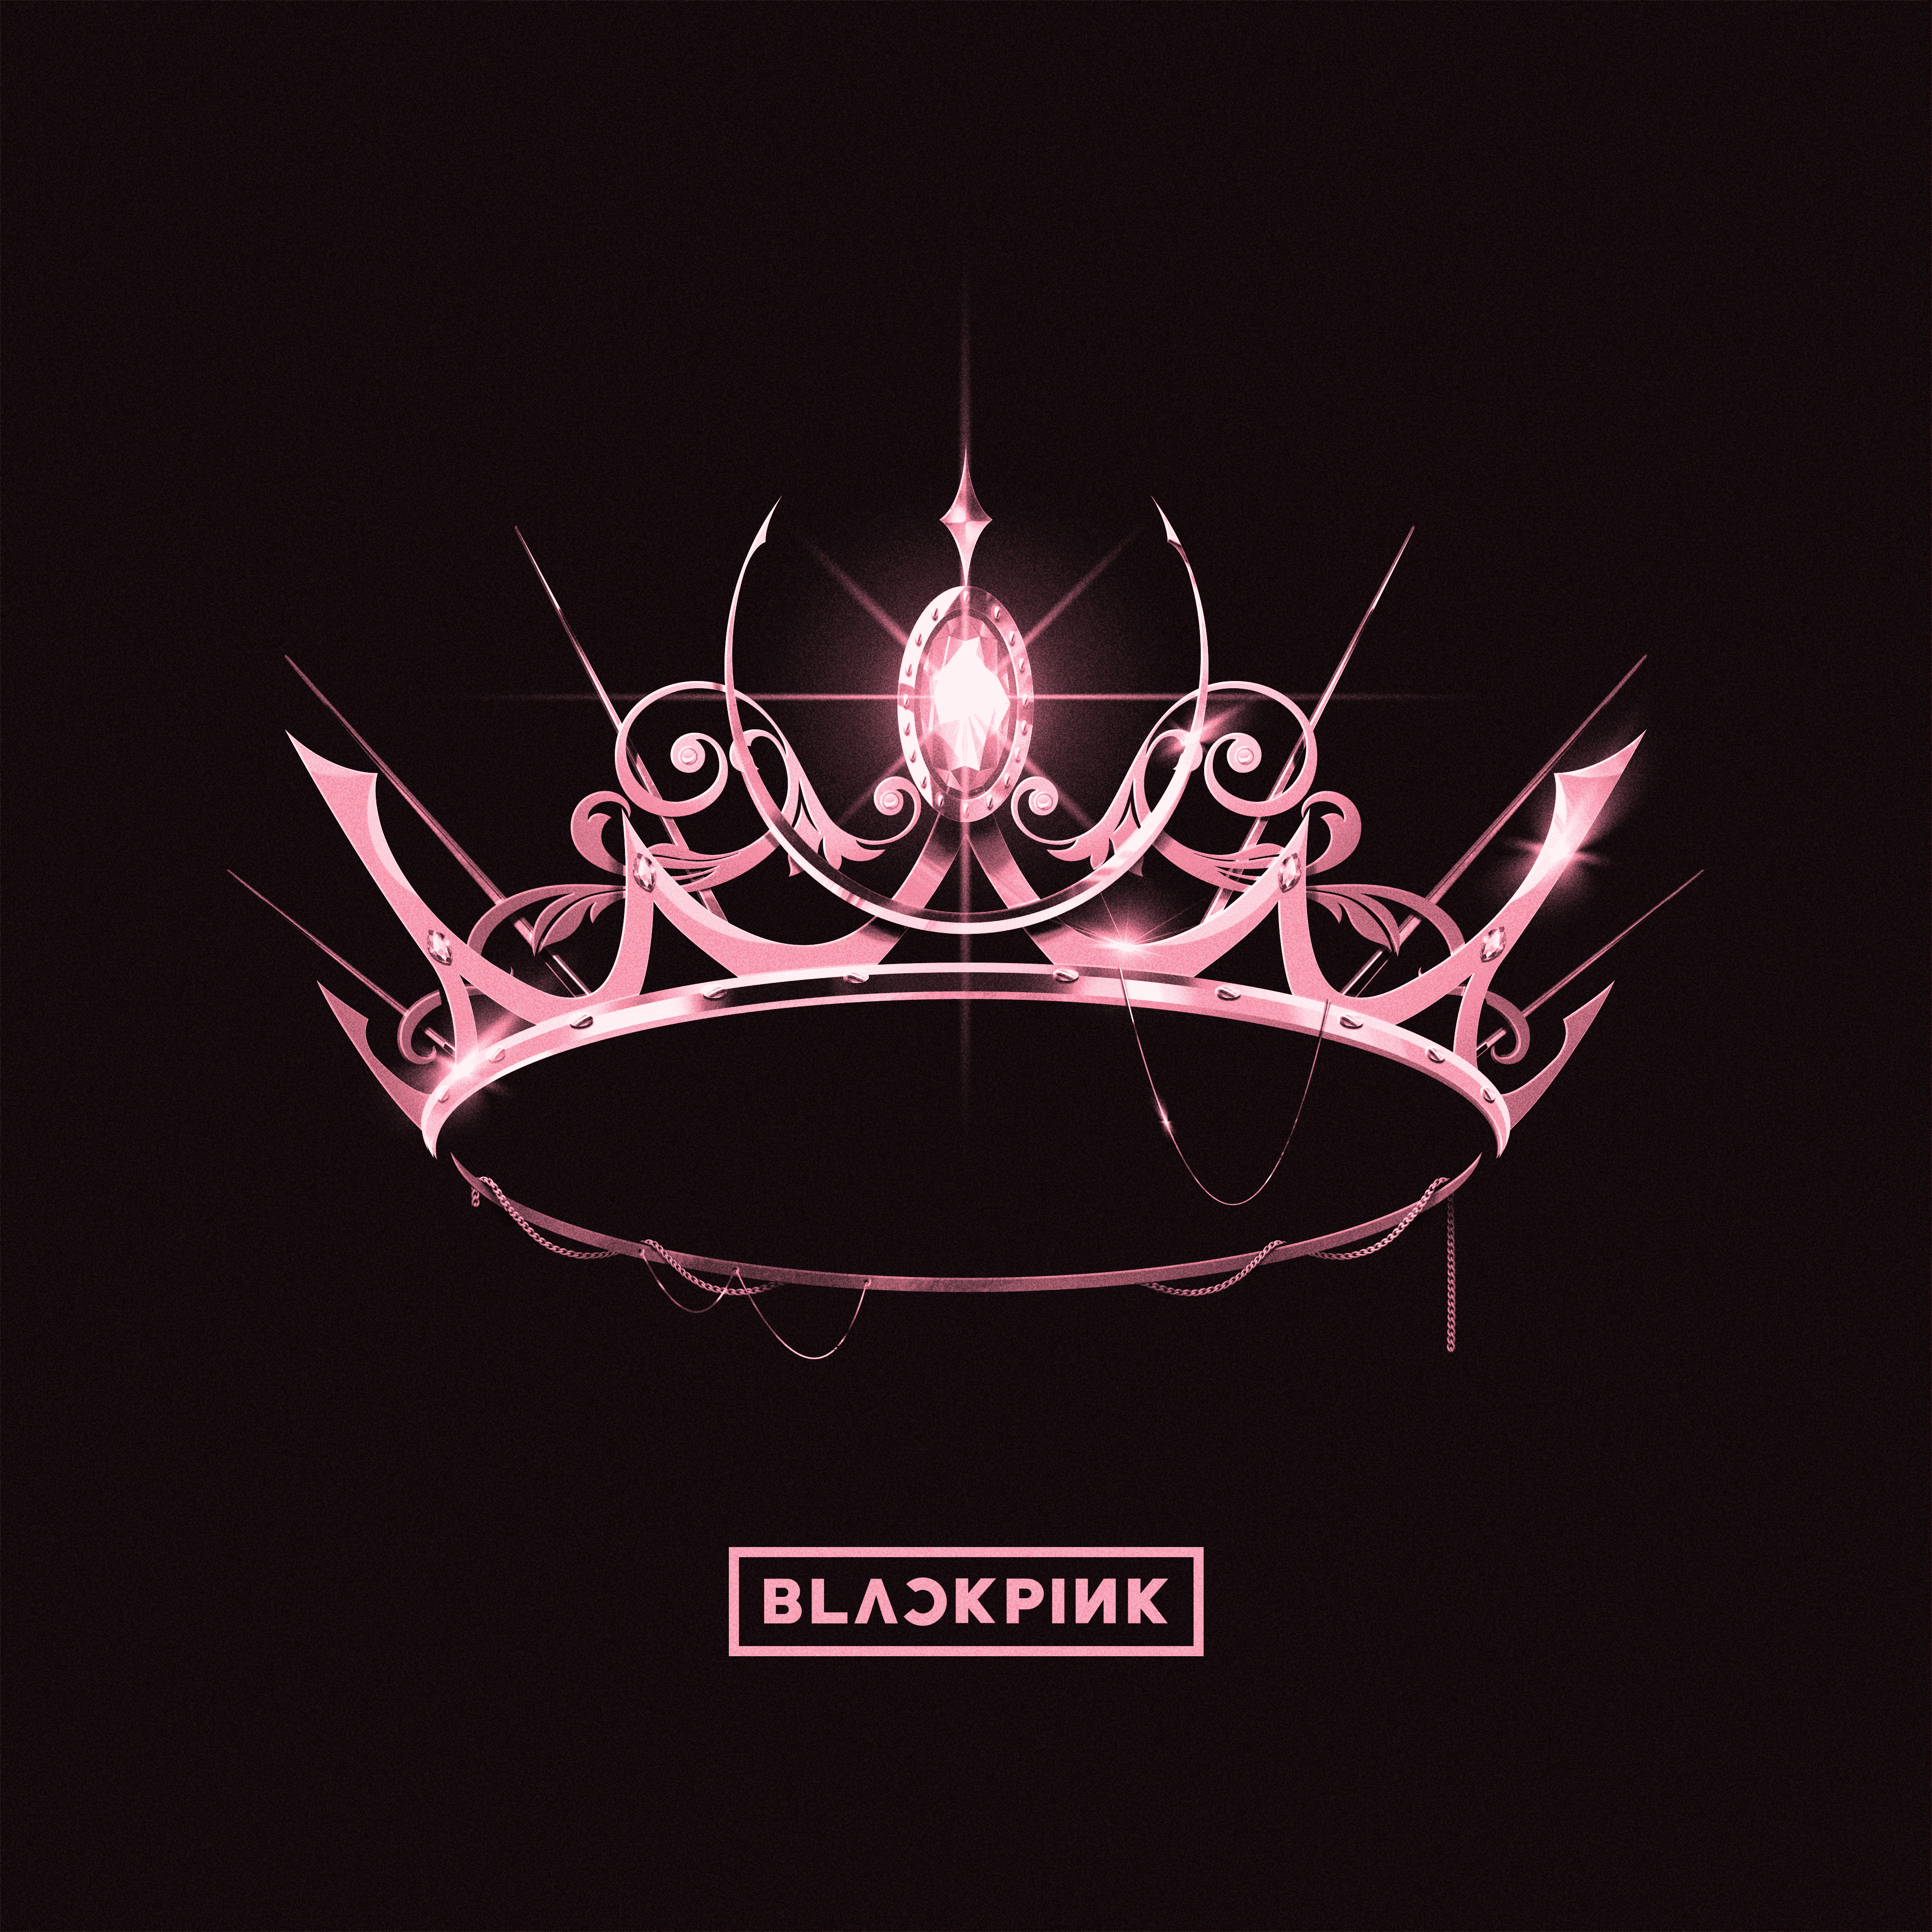 BLACKPINK - [The Album] (1st Album Version #4) –